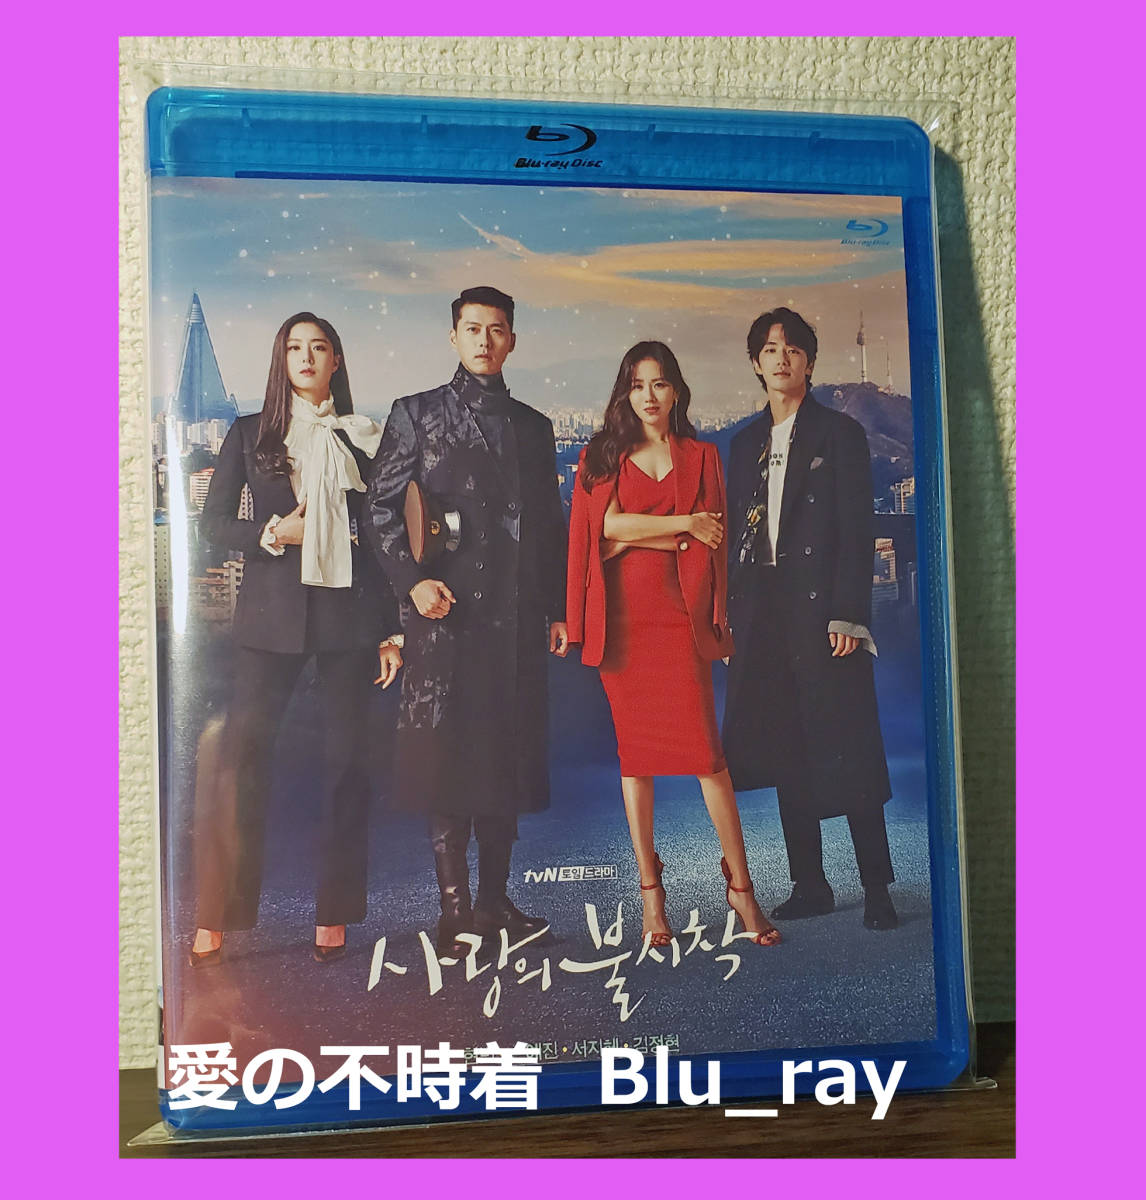  love. не час надеты Blu-ray ( Blue-ray ) японский язык дуть изменение переключатель [ корейская драма ]